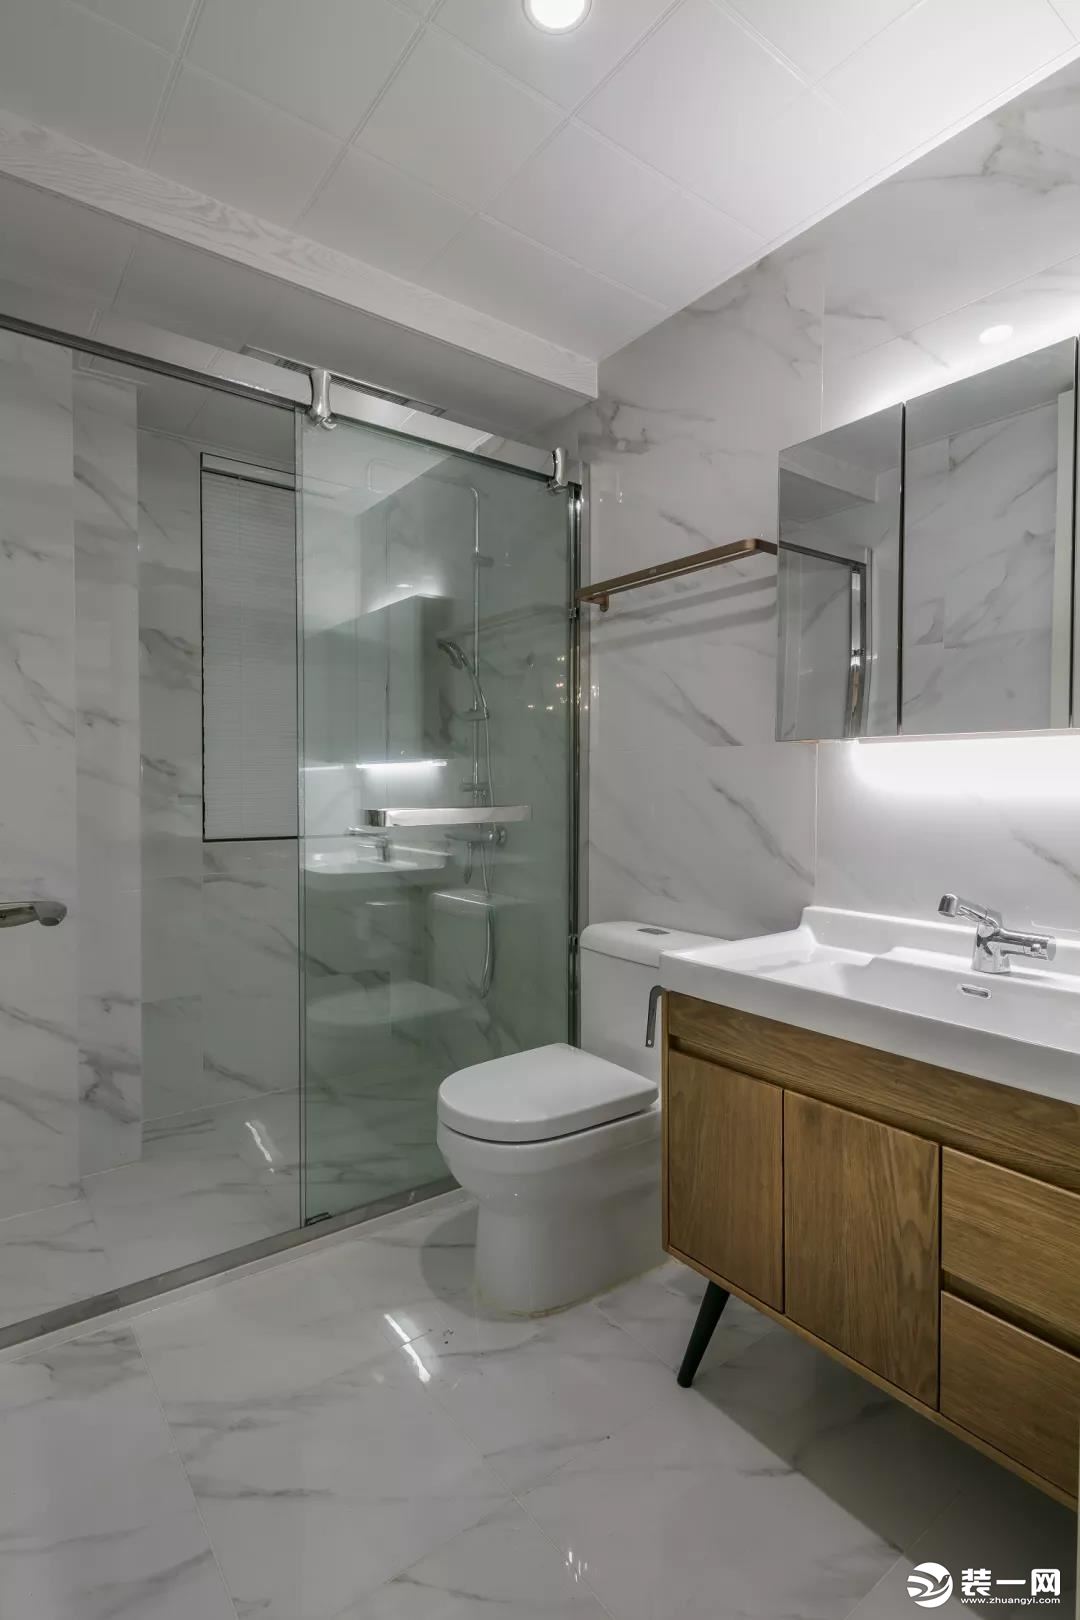 客卫以爵士白的墙面地面，玻璃隔断了淋浴区域，结合木质洗手盆柜